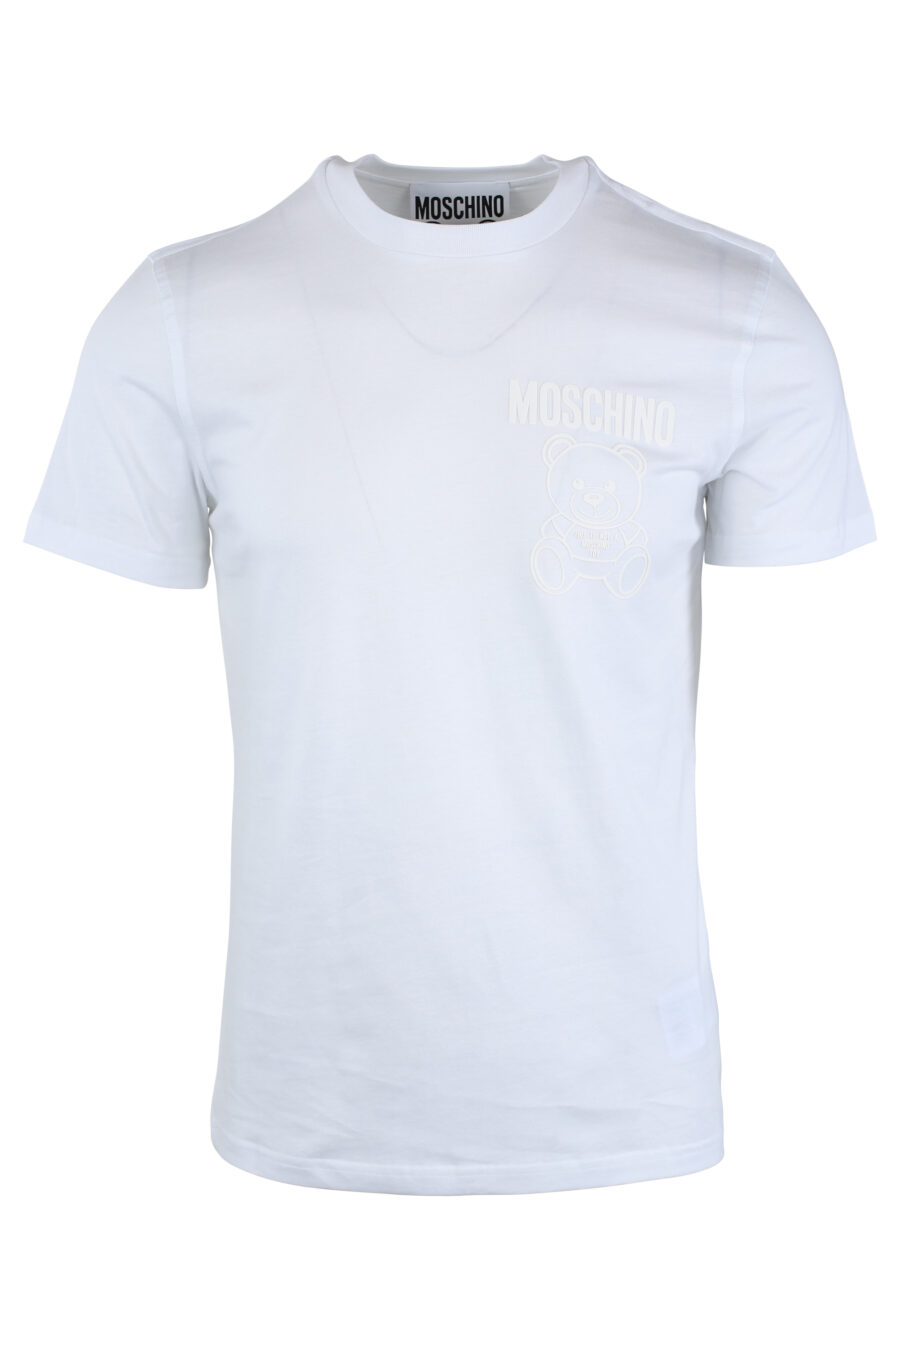 T-shirt blanc avec ours monochrome minilogue - IMG 1649